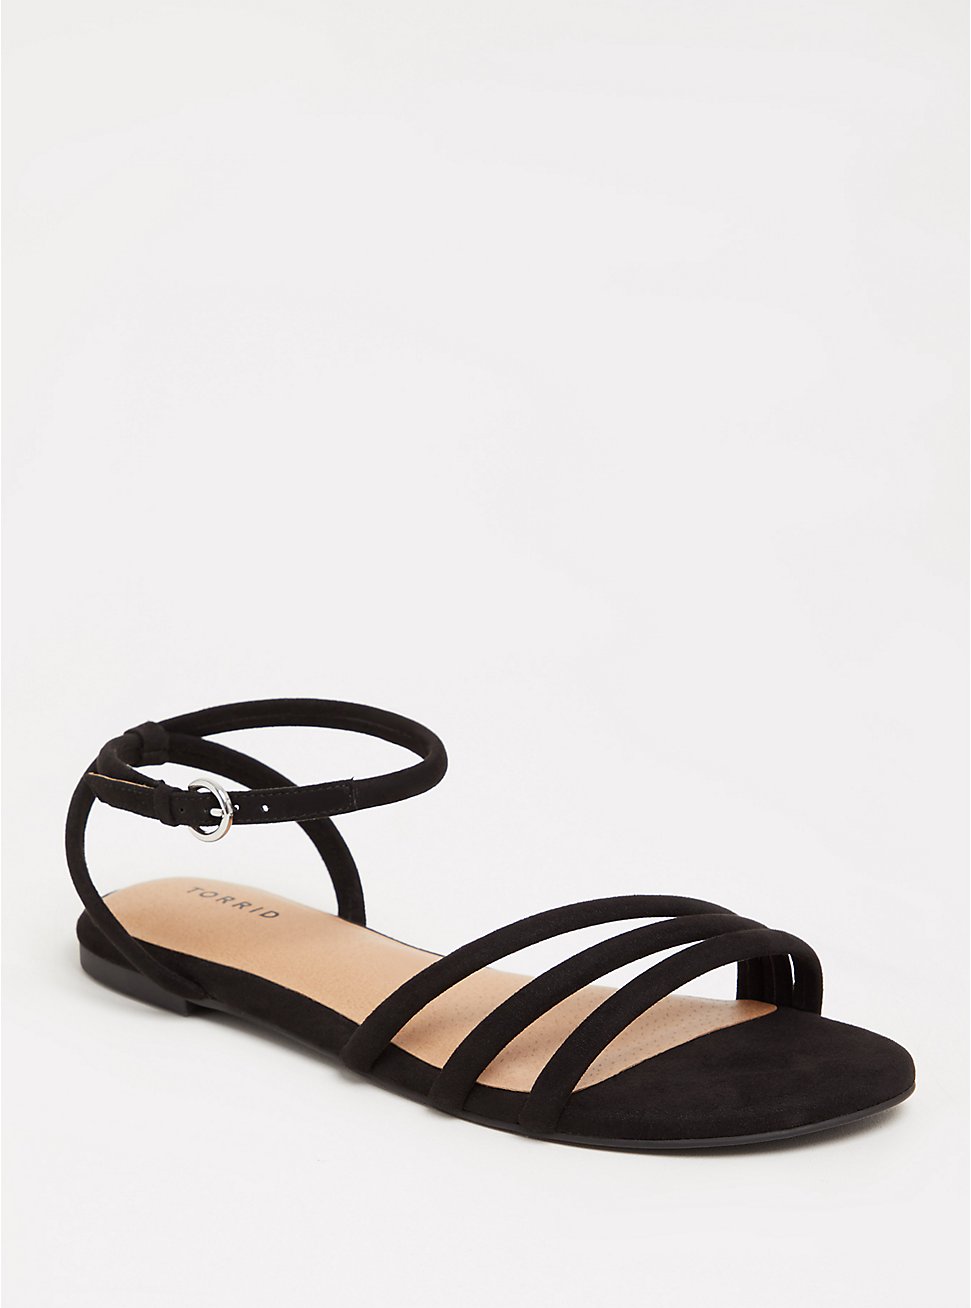 Plus Size - Black Strappy Sandal (WW) - Torrid